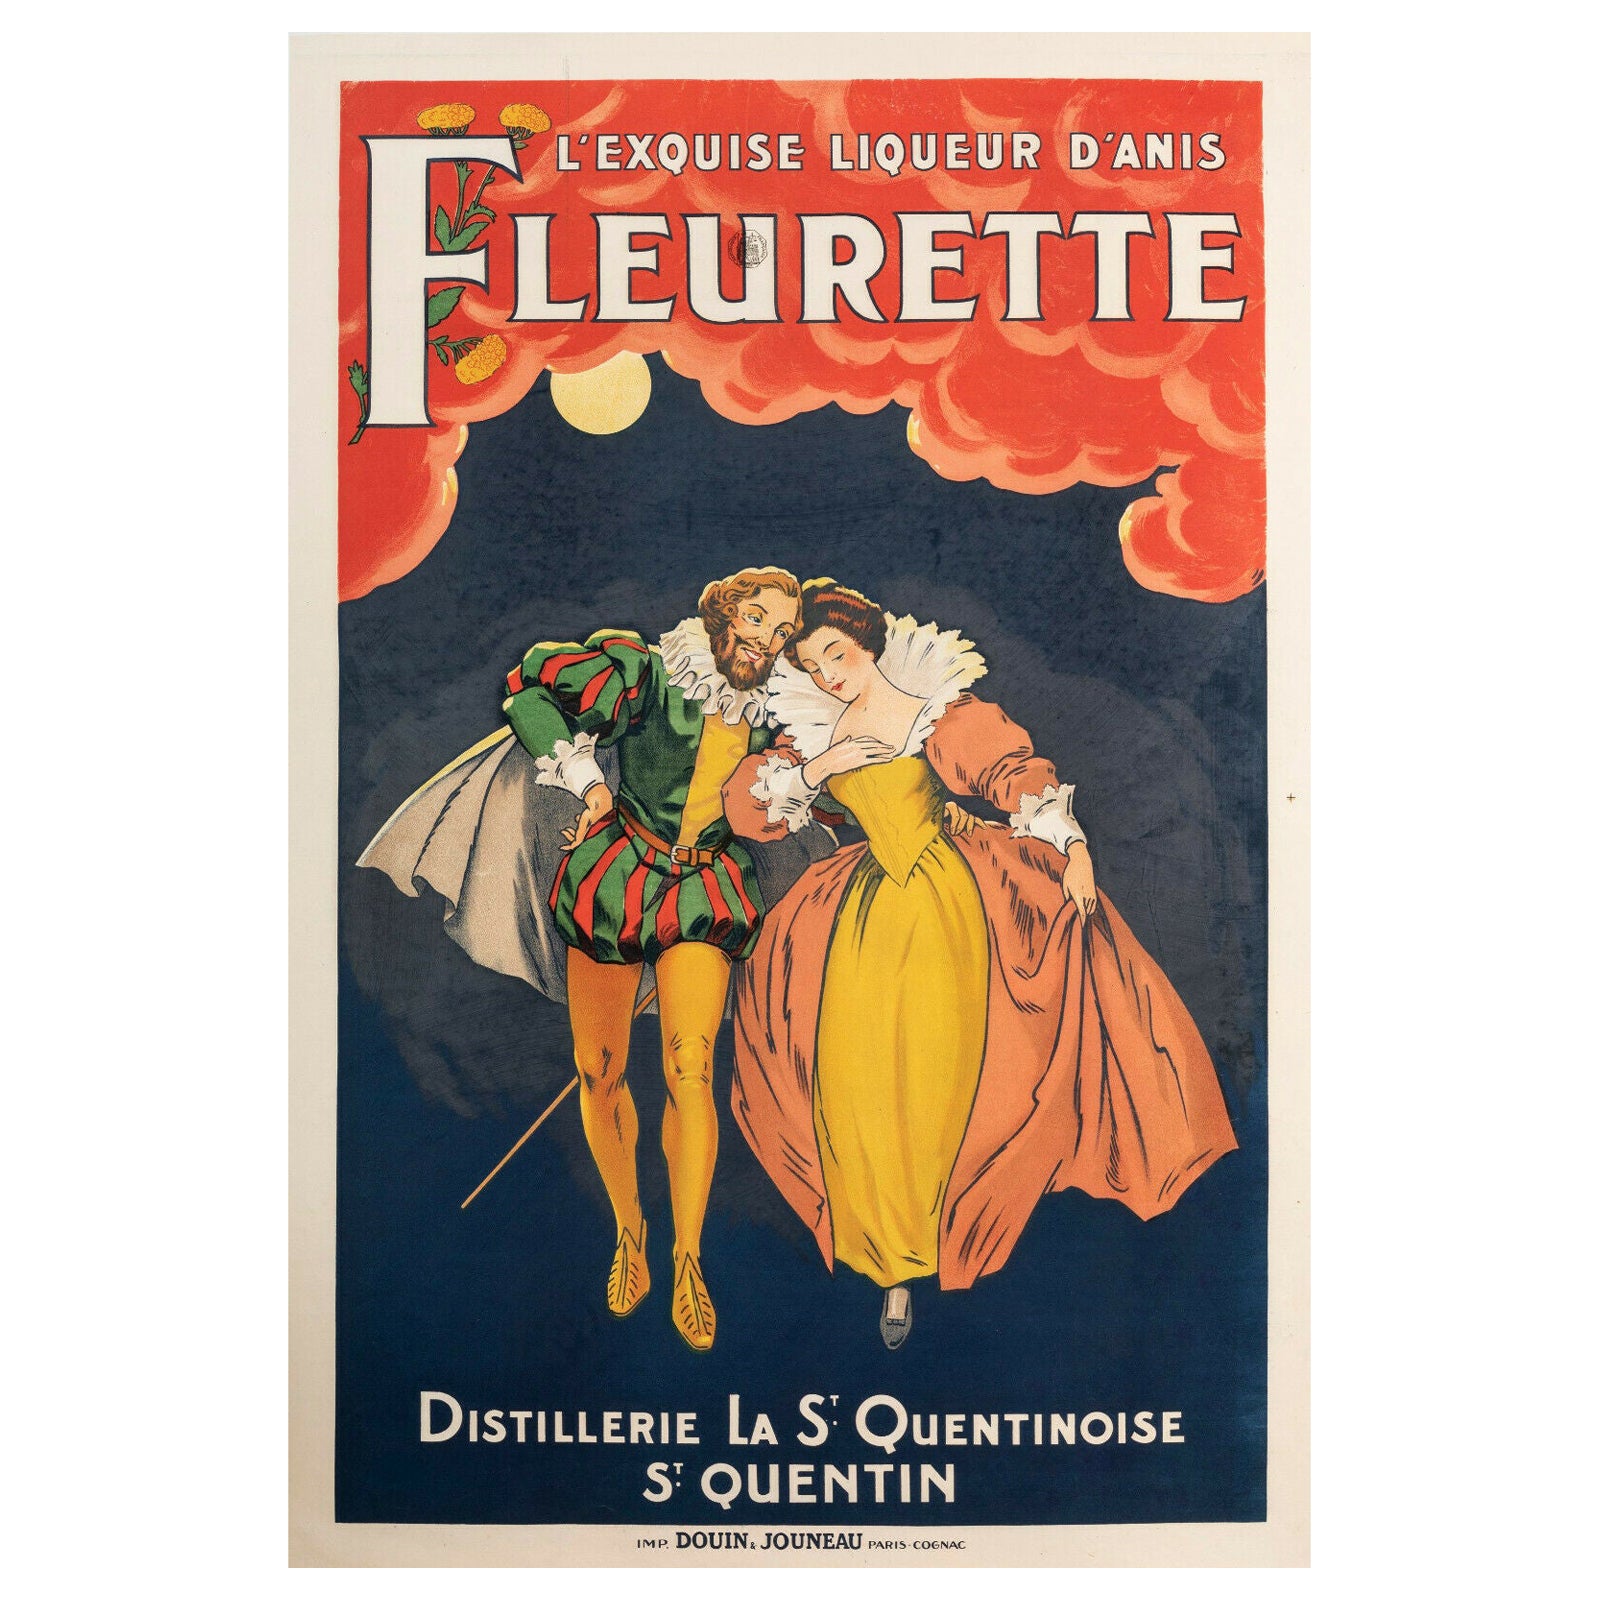 Original Vintage Poster-The Exquisite Anise Fleurette Liqueur, 1925 For Sale